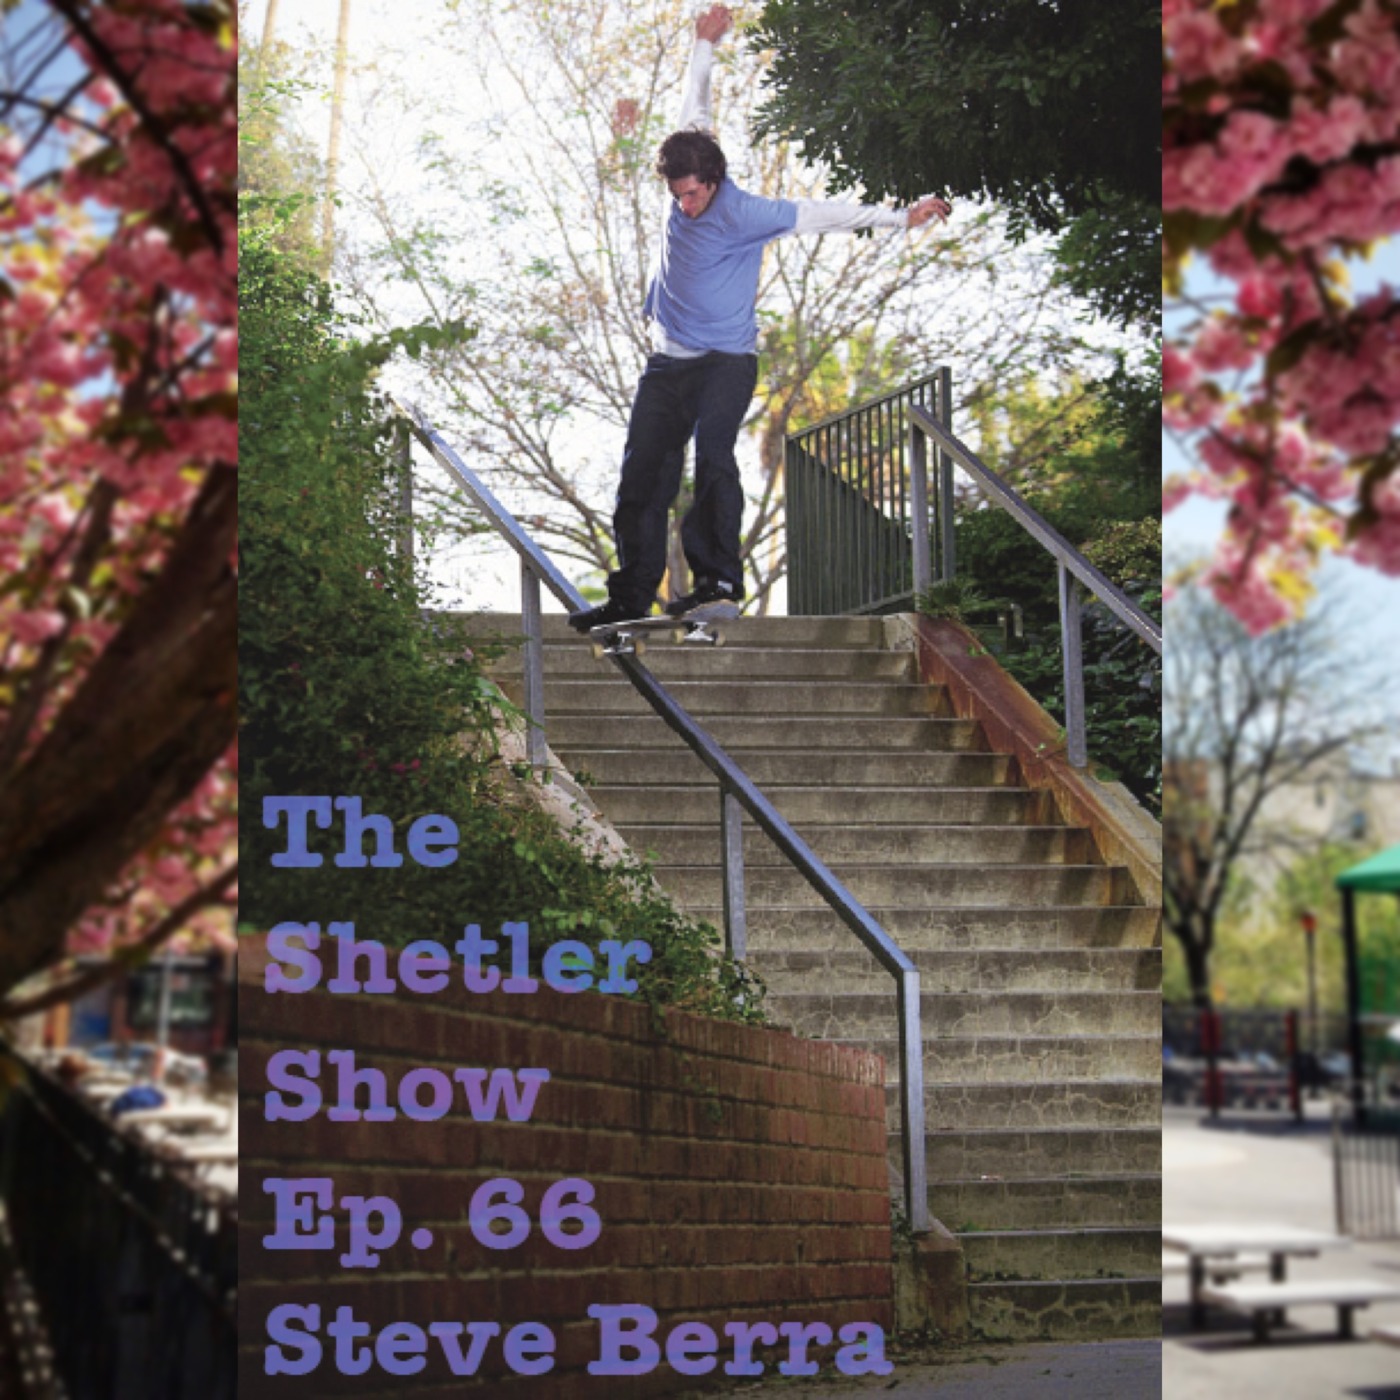 Episode 65: Steve Berra - ALL I NEED SKATE PODCAST